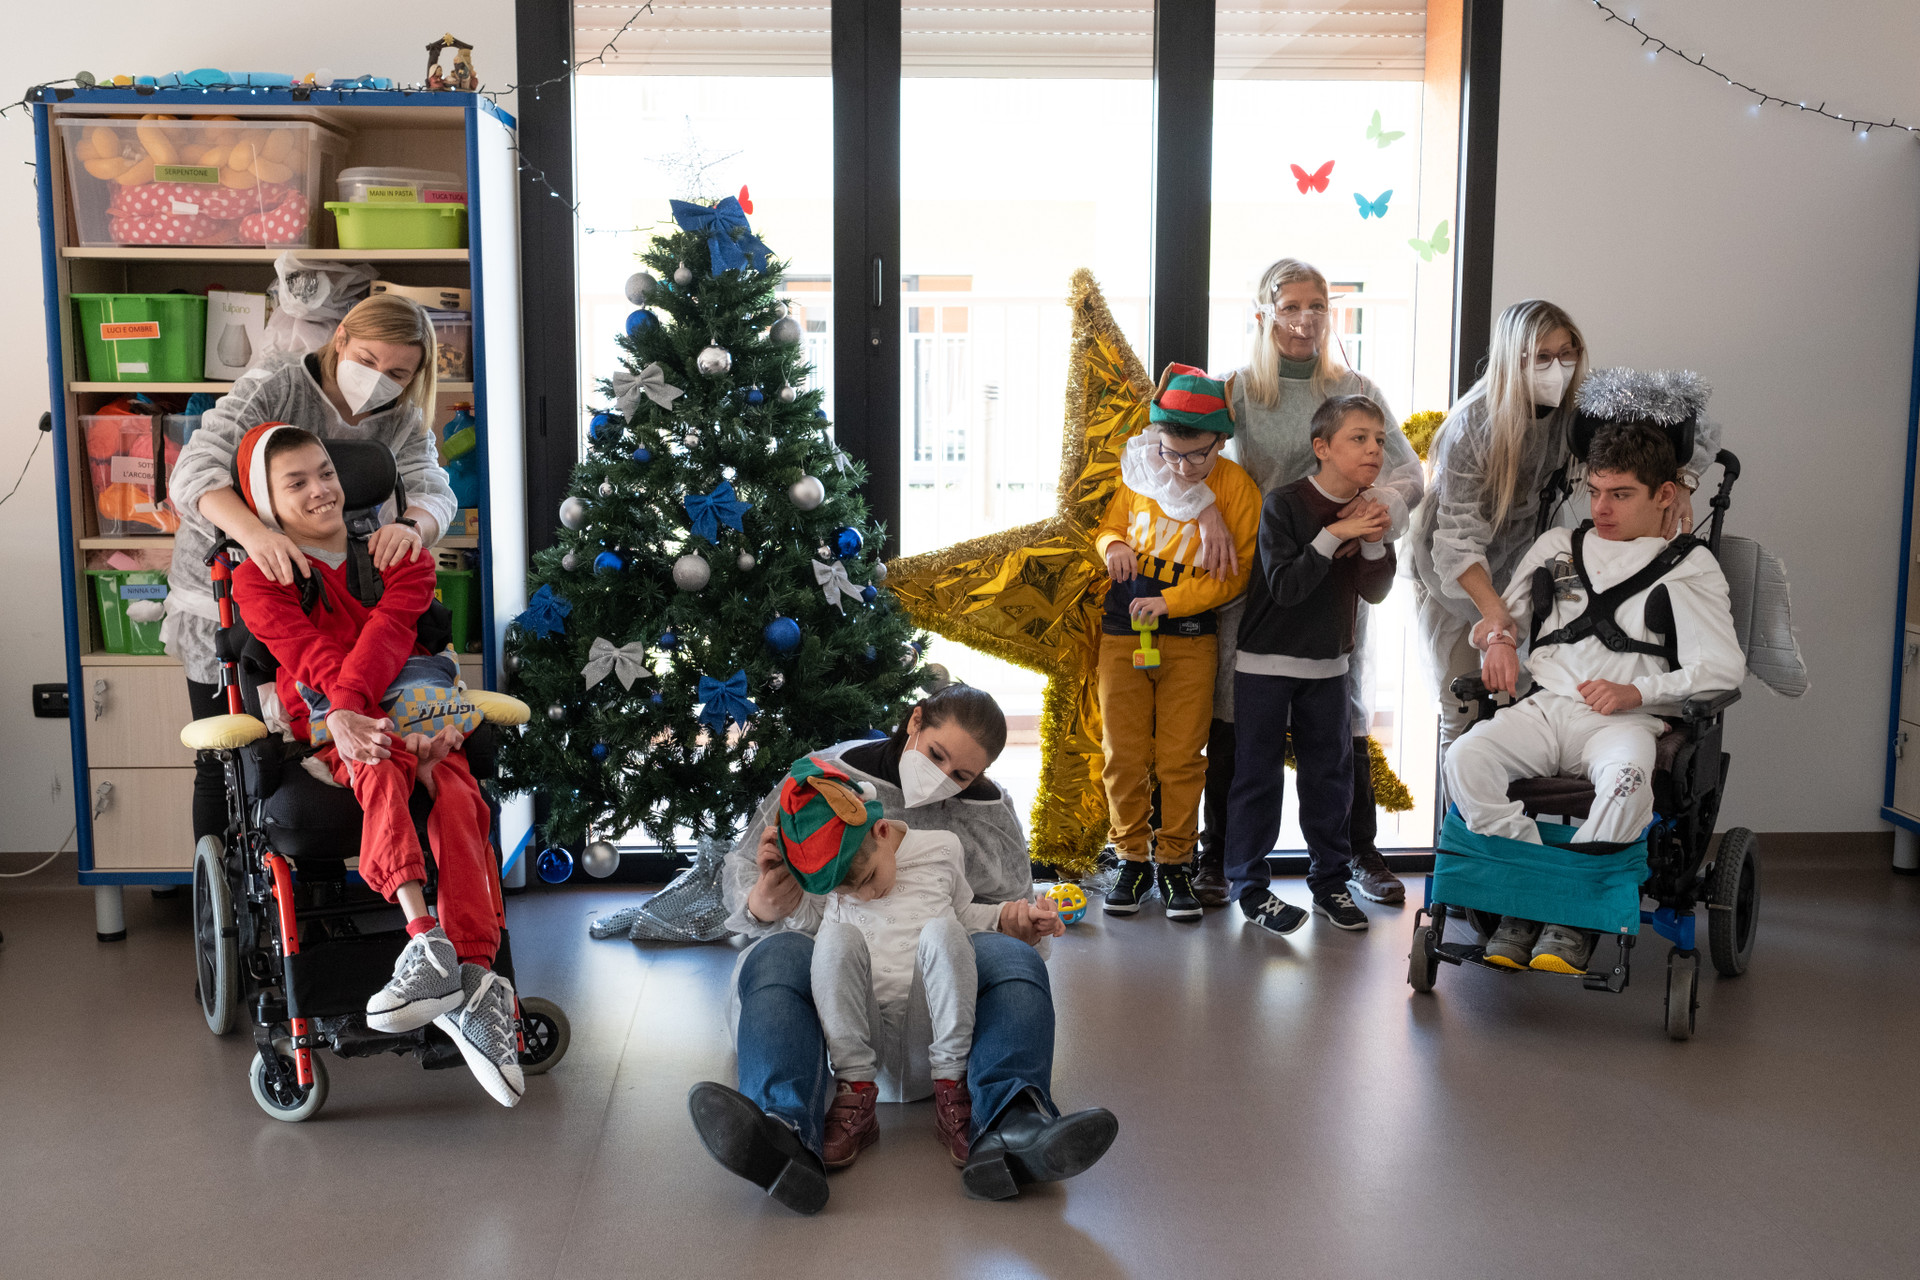 Bambini, ragazzi sordociechi ed operatrici in clima di festa per il Natale, con addobbi, cappelli e decorazioni colorate. 